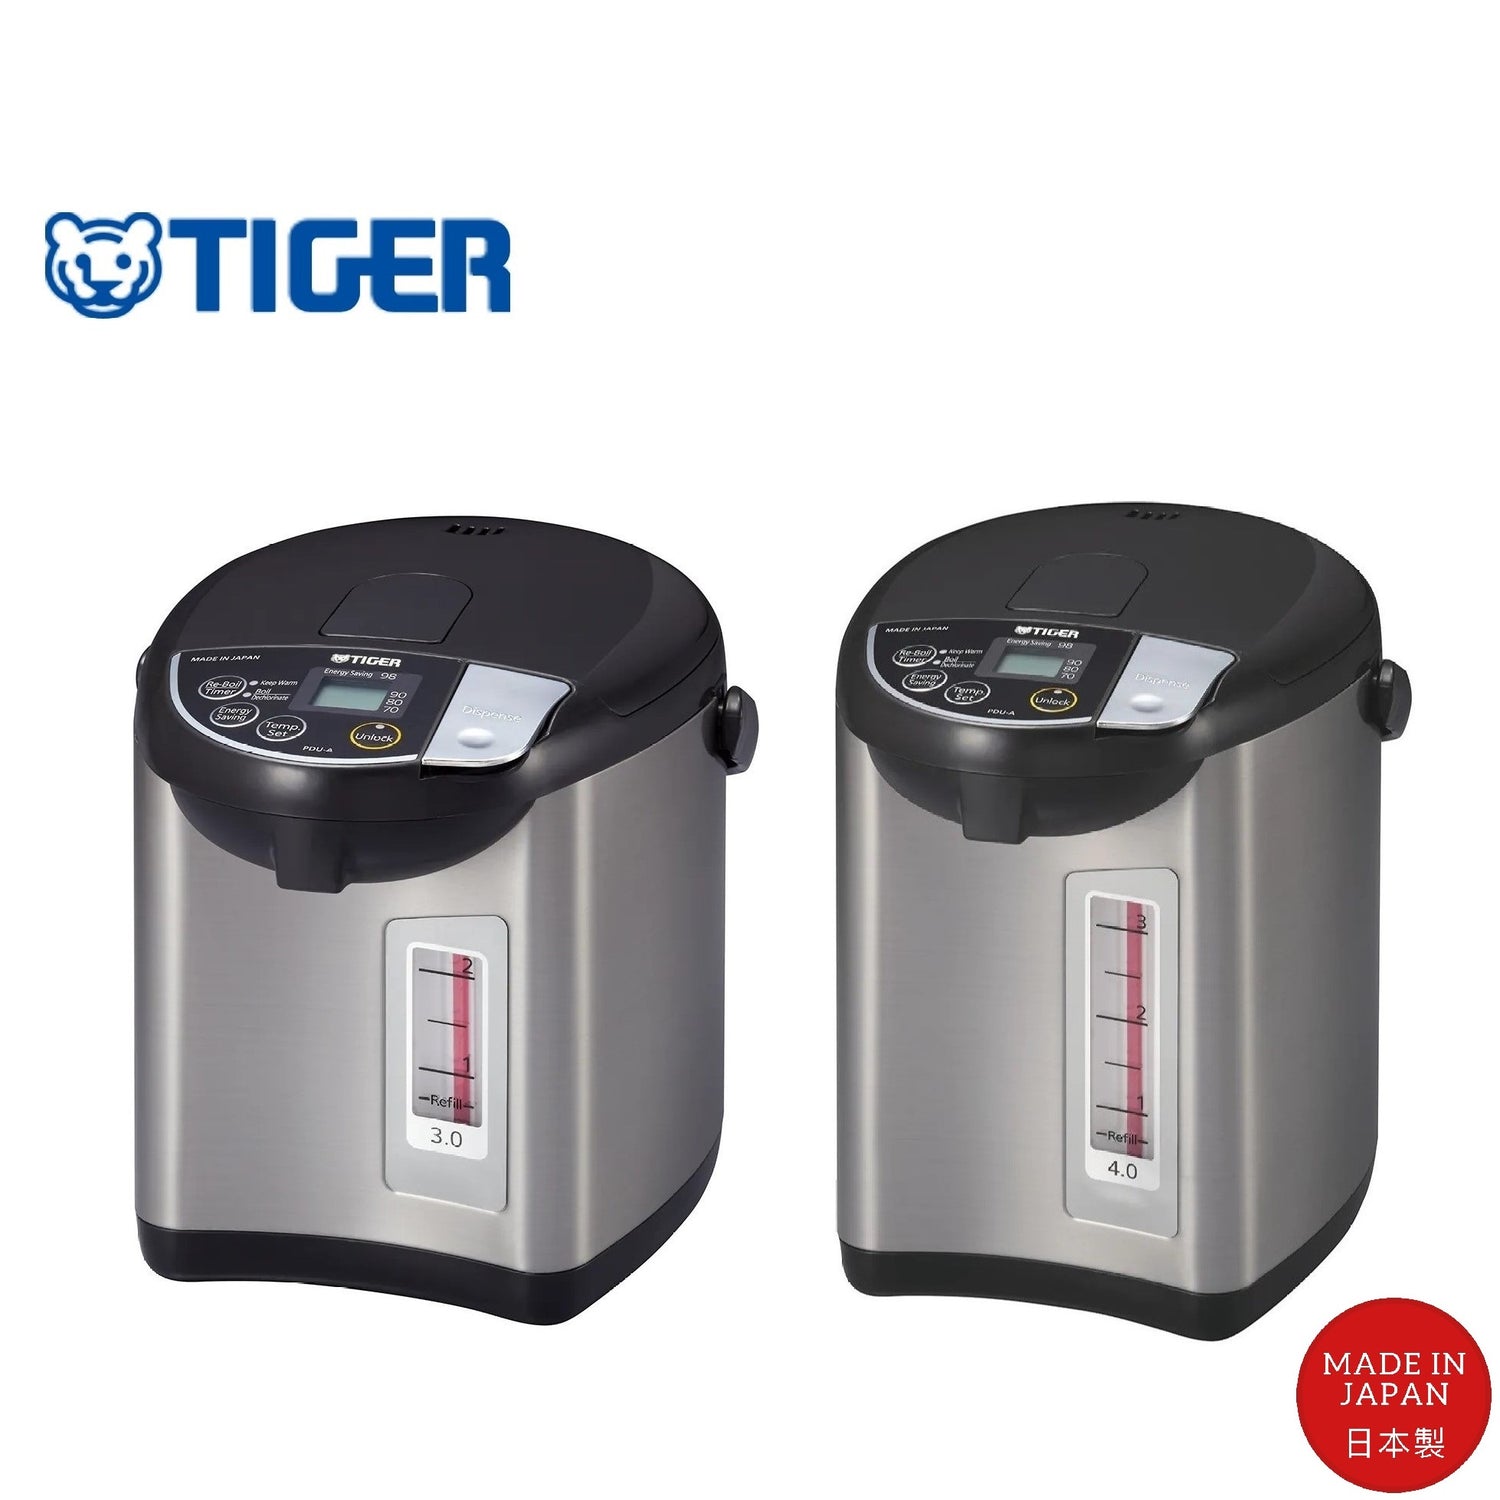 70 Tiger Hot Water Dispenser ideas